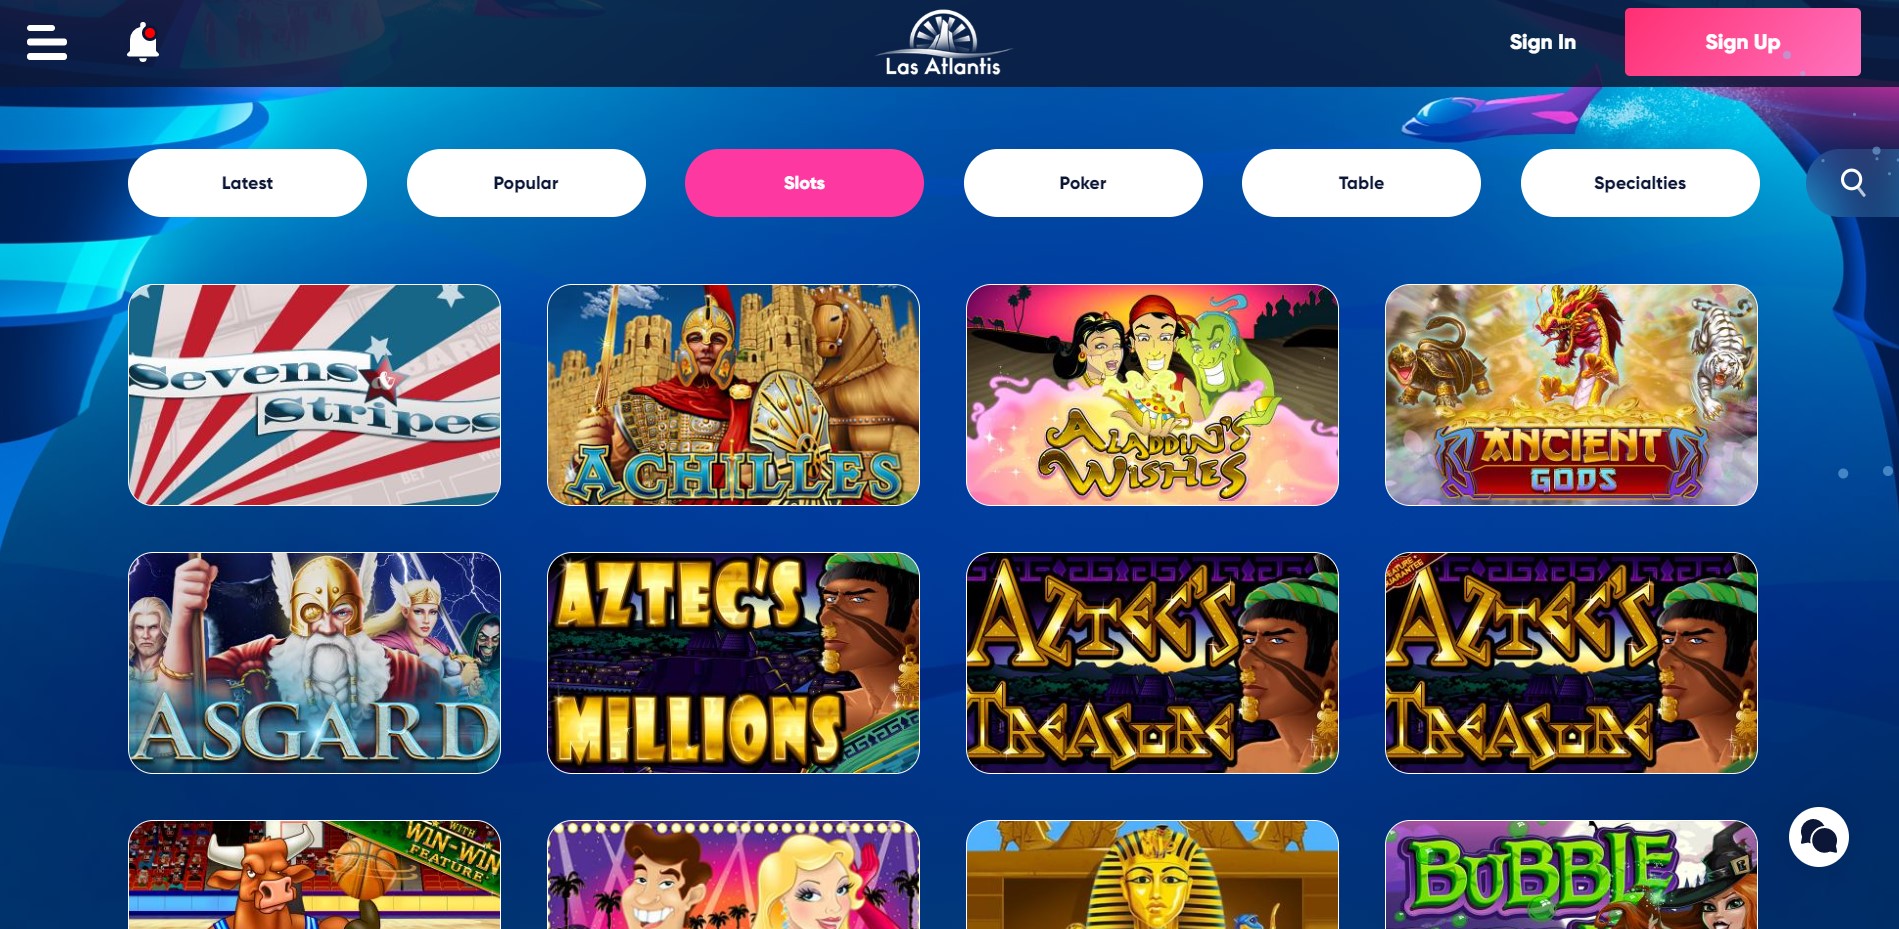 Las Atlantis Casino - Online Slots